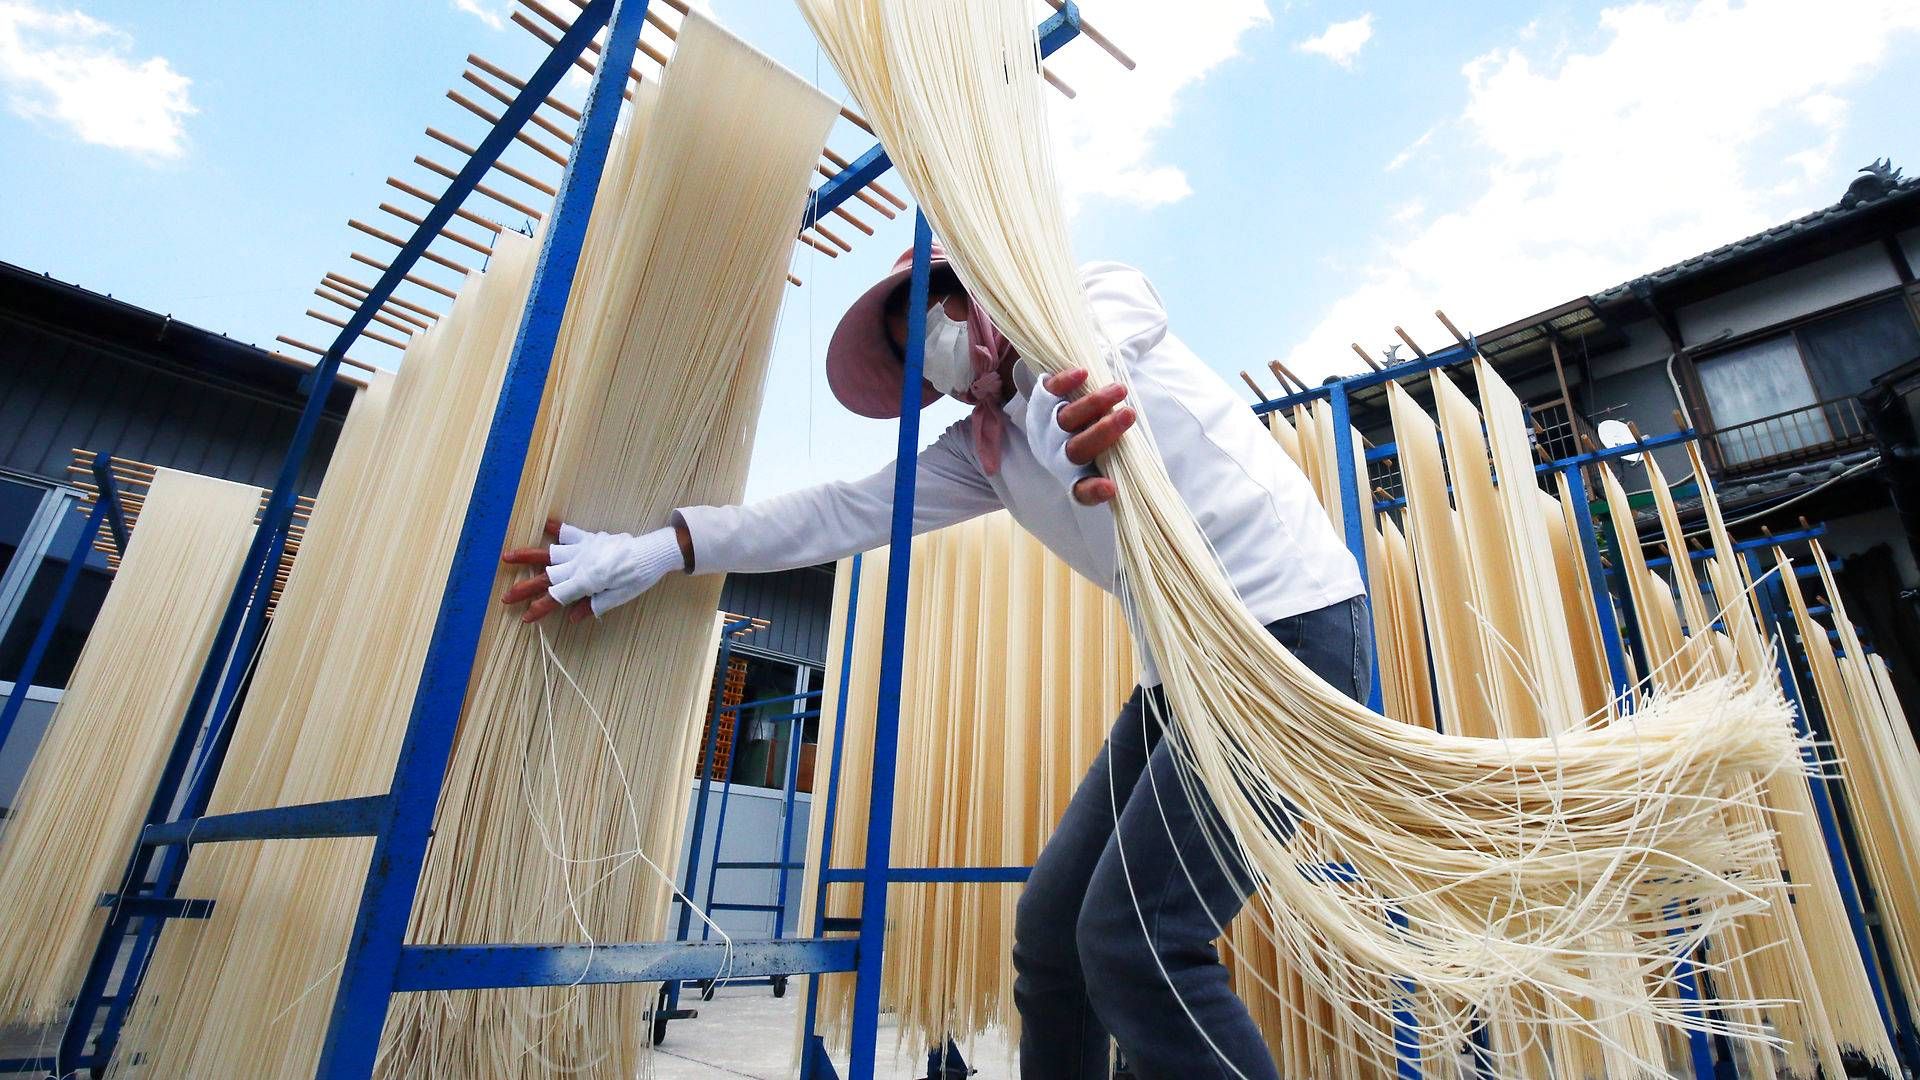 Den lyse hvedesort, Kina køber stort ind af, bruges blandt andet særligt til produktion af nudler. | Foto: Katsumi Tanaka/AP/Ritzau Scanpix